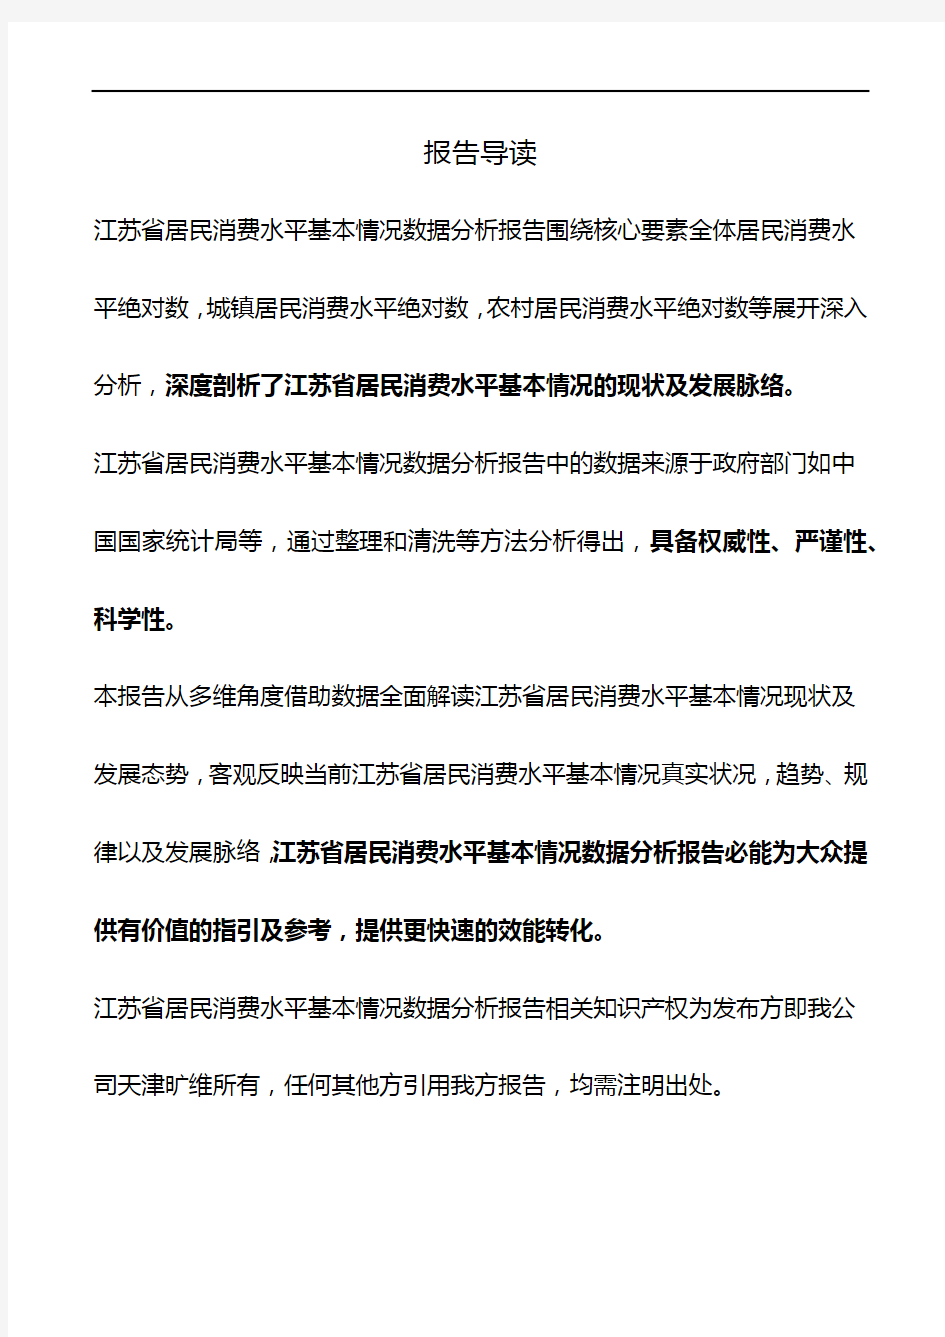 江苏省居民消费水平基本情况数据分析报告2018版